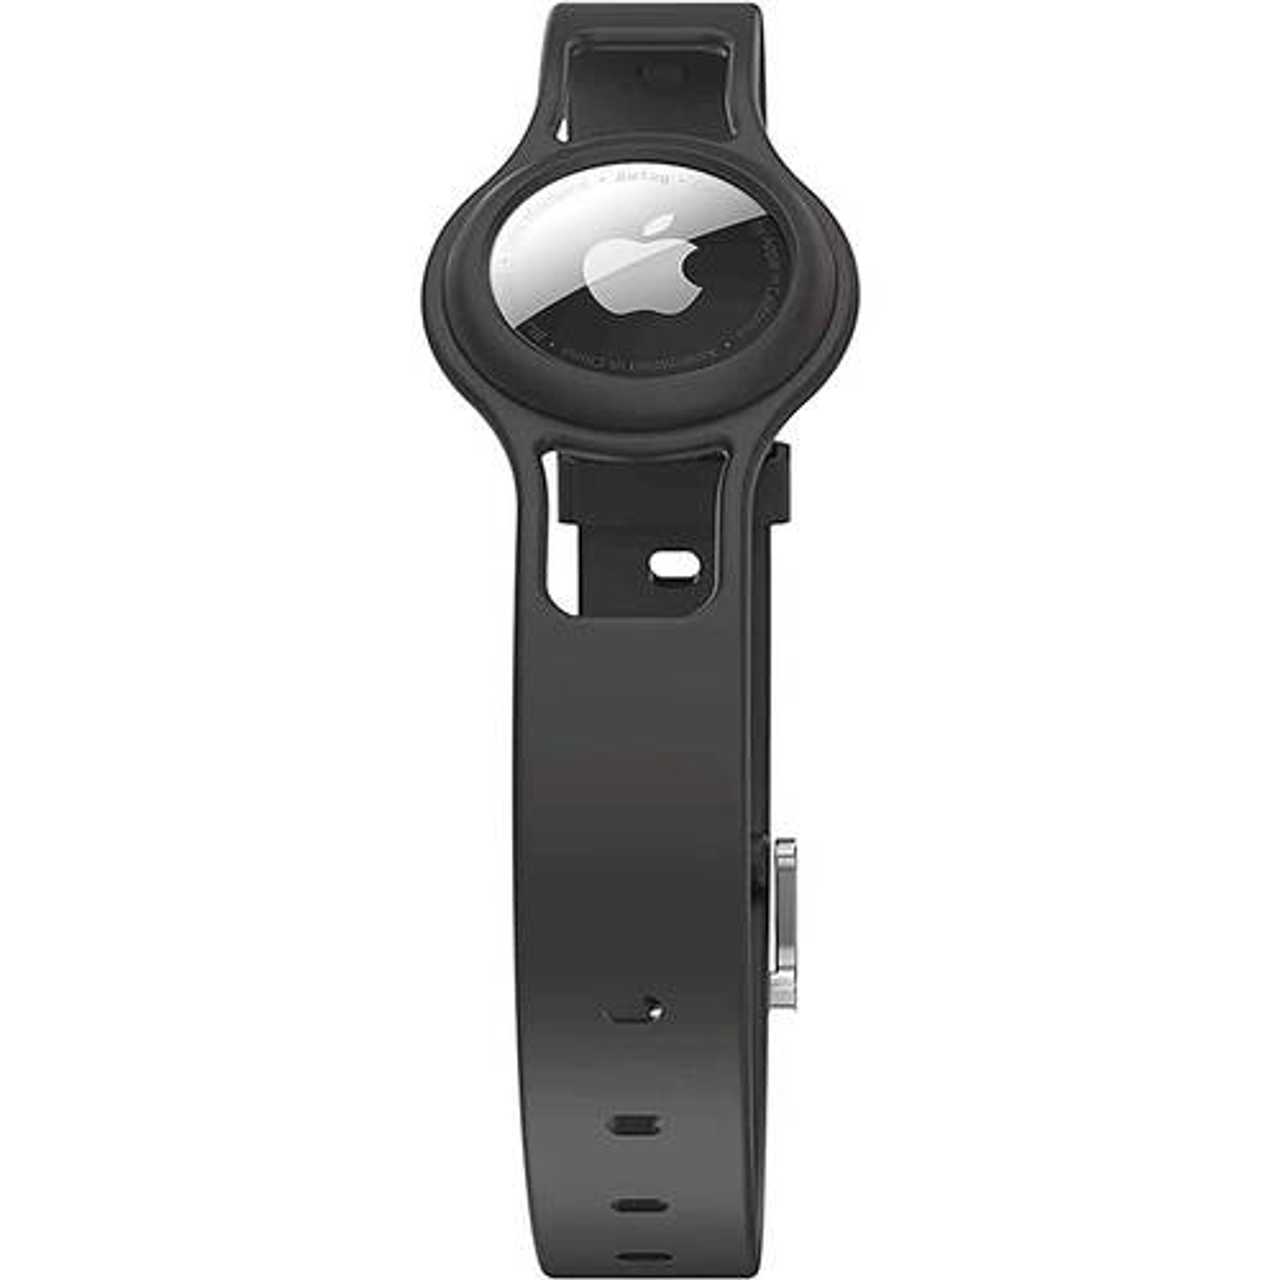 SaharaCase - Silicone Dog Collar for Apple AirTag - Black